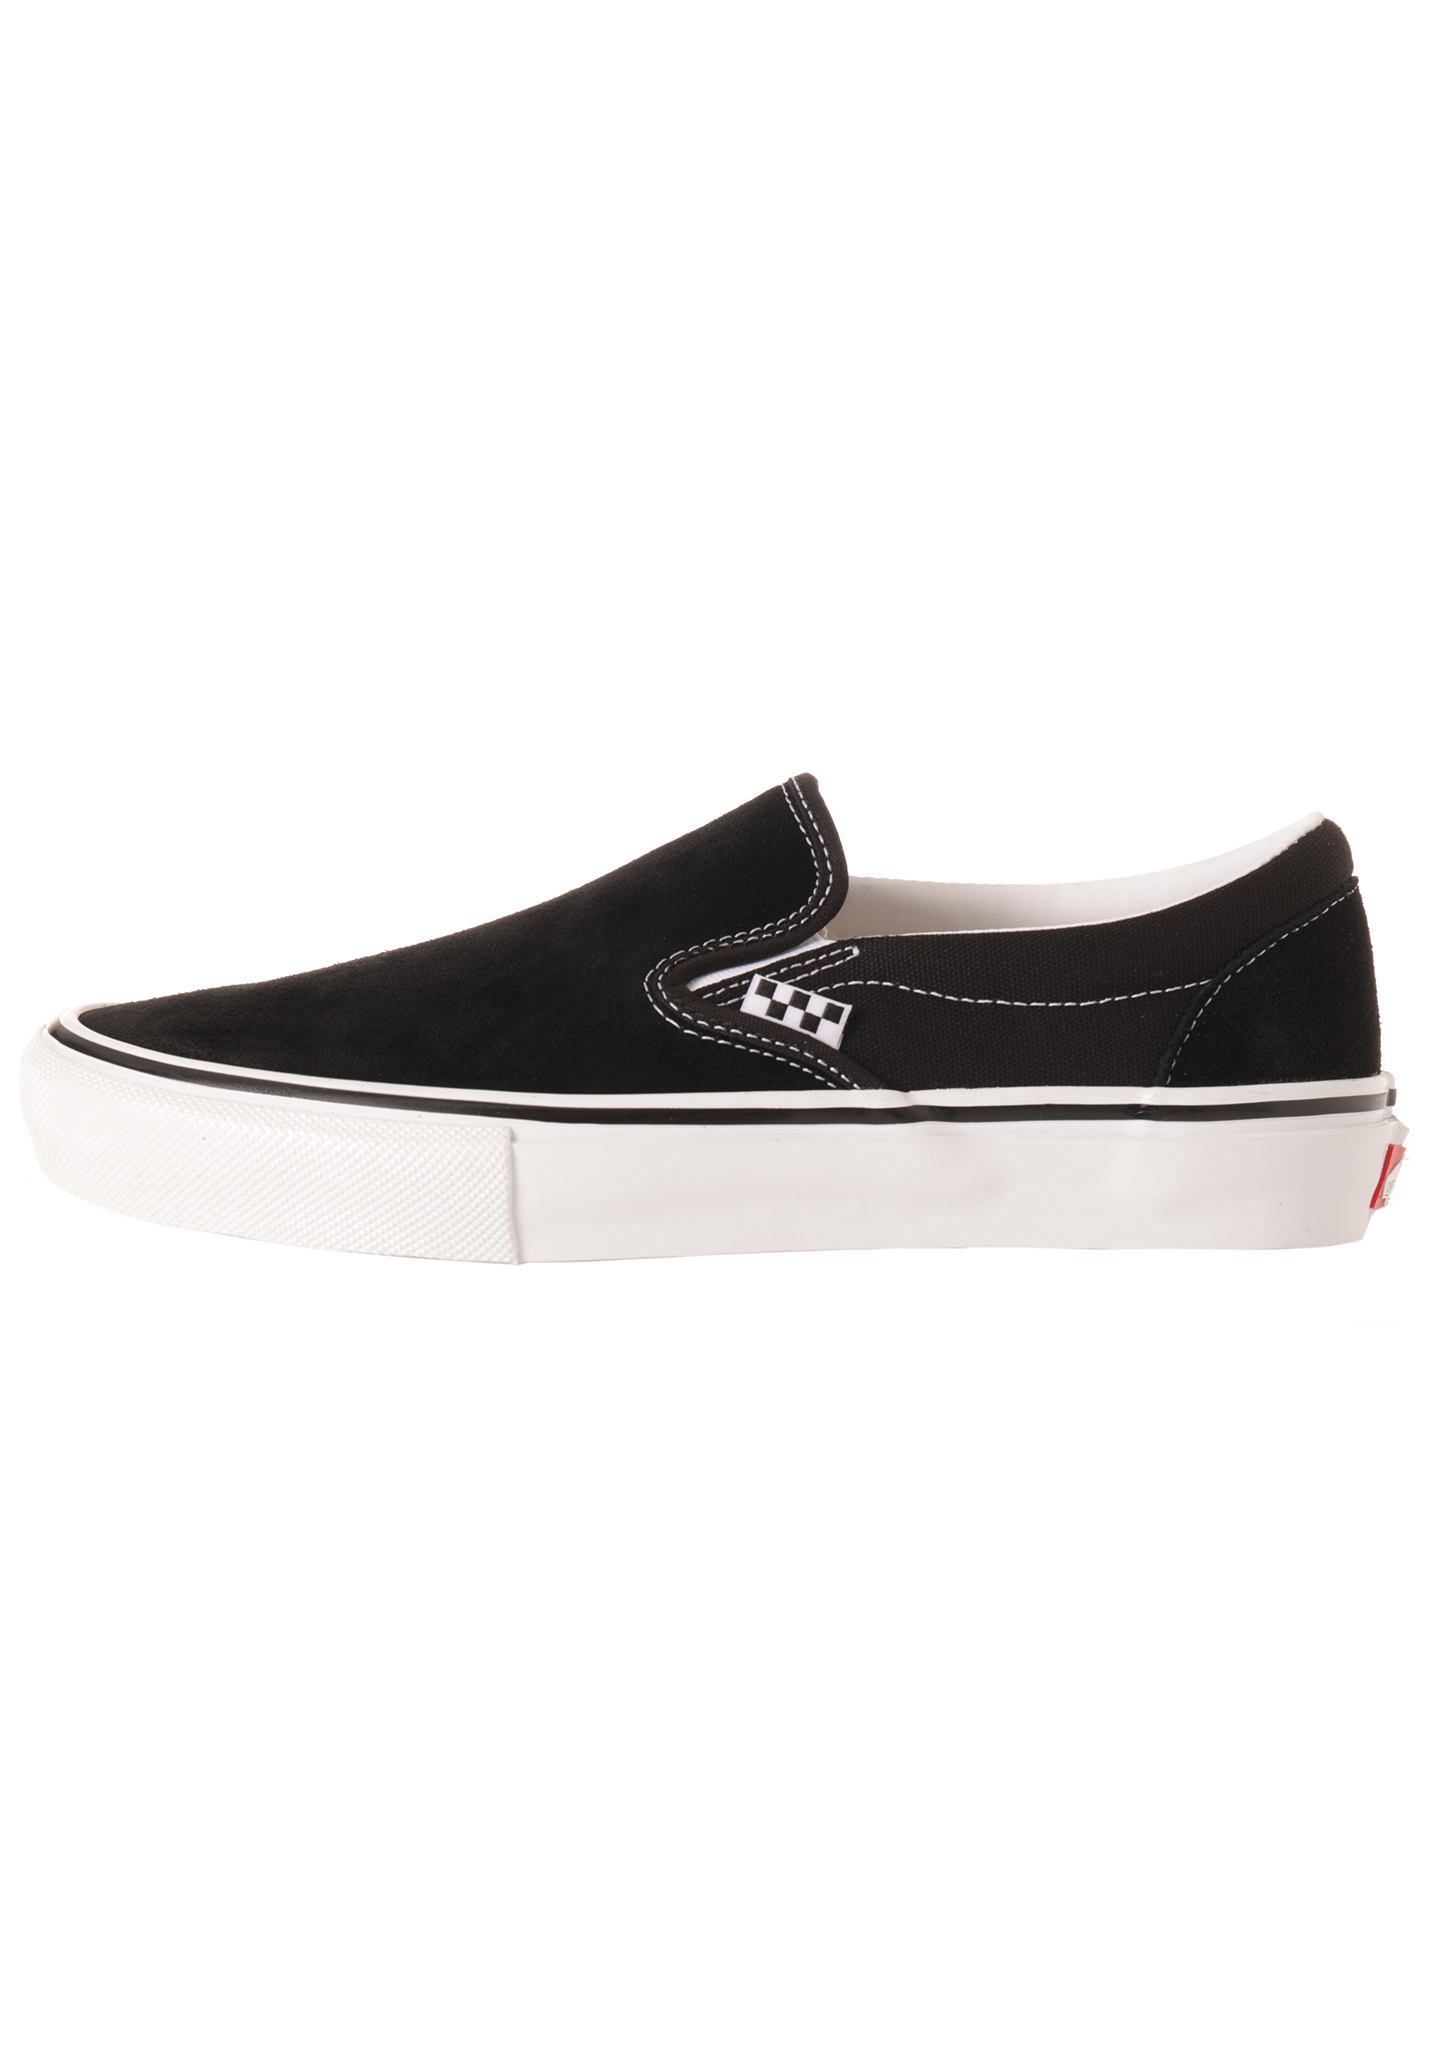 Vans Skate Slip-On Slip-ons black-white 44